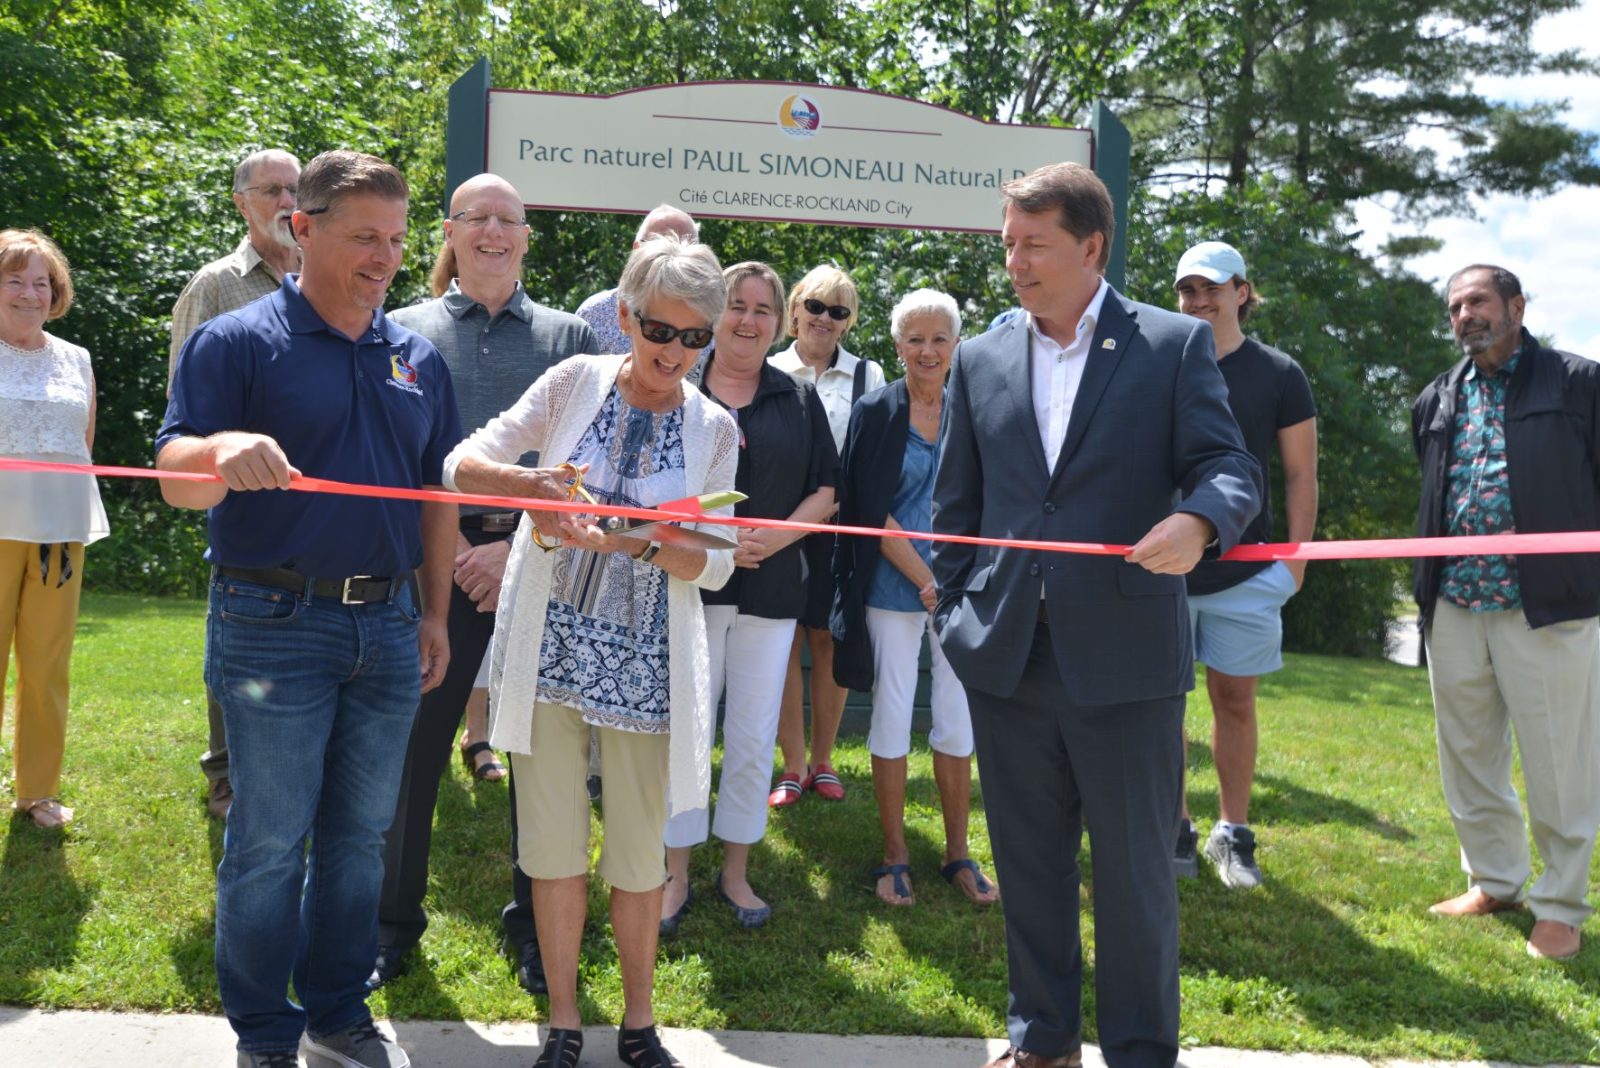 Inauguration officielle du parc naturel Paul Simoneau